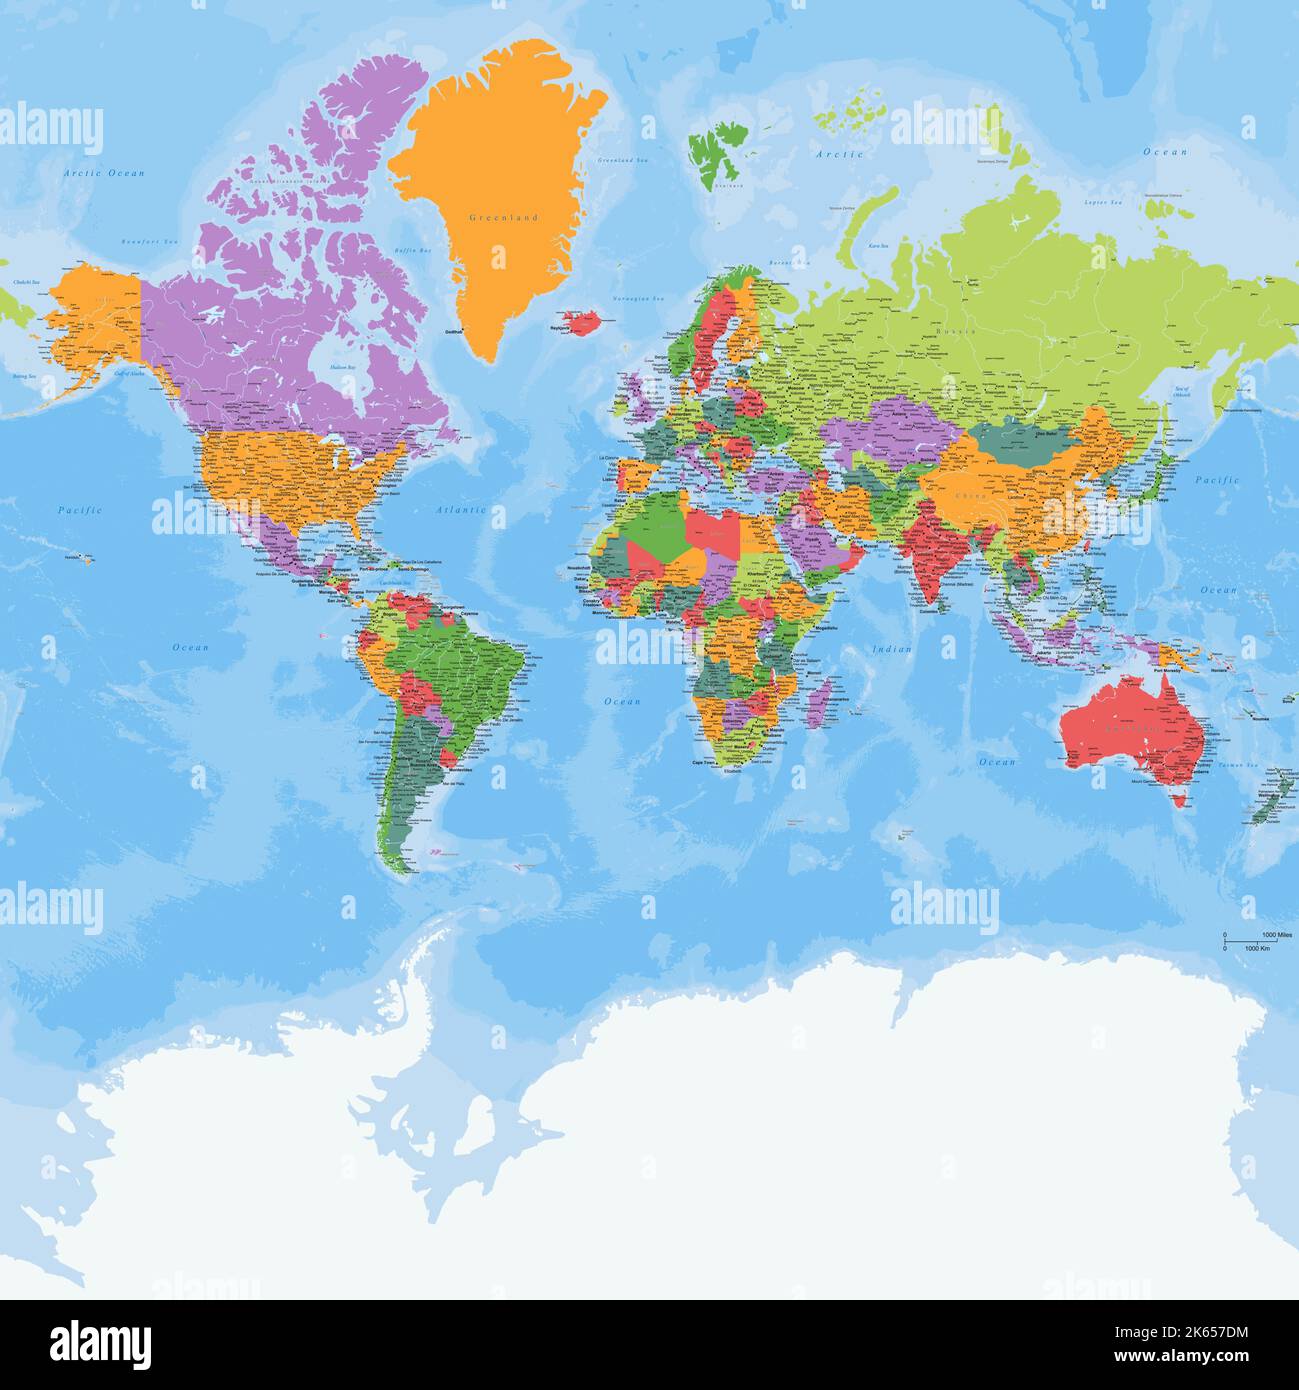 Proyección Mercator Del Mapa Mundial Detallado Político Imagen Vector De Stock Alamy 1425